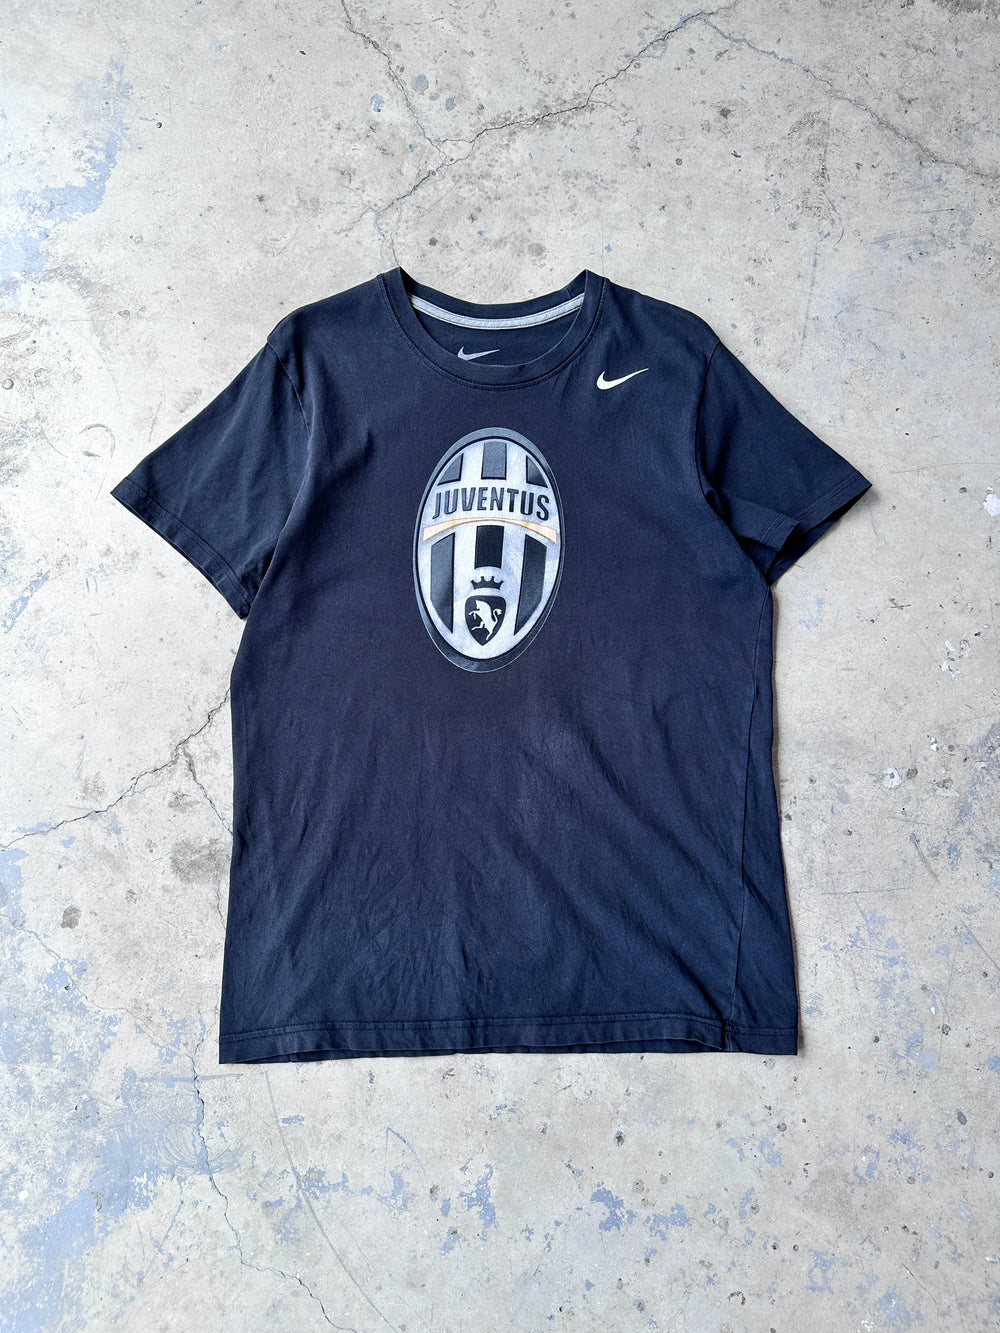 Vintage Nike Juventus T-shirt